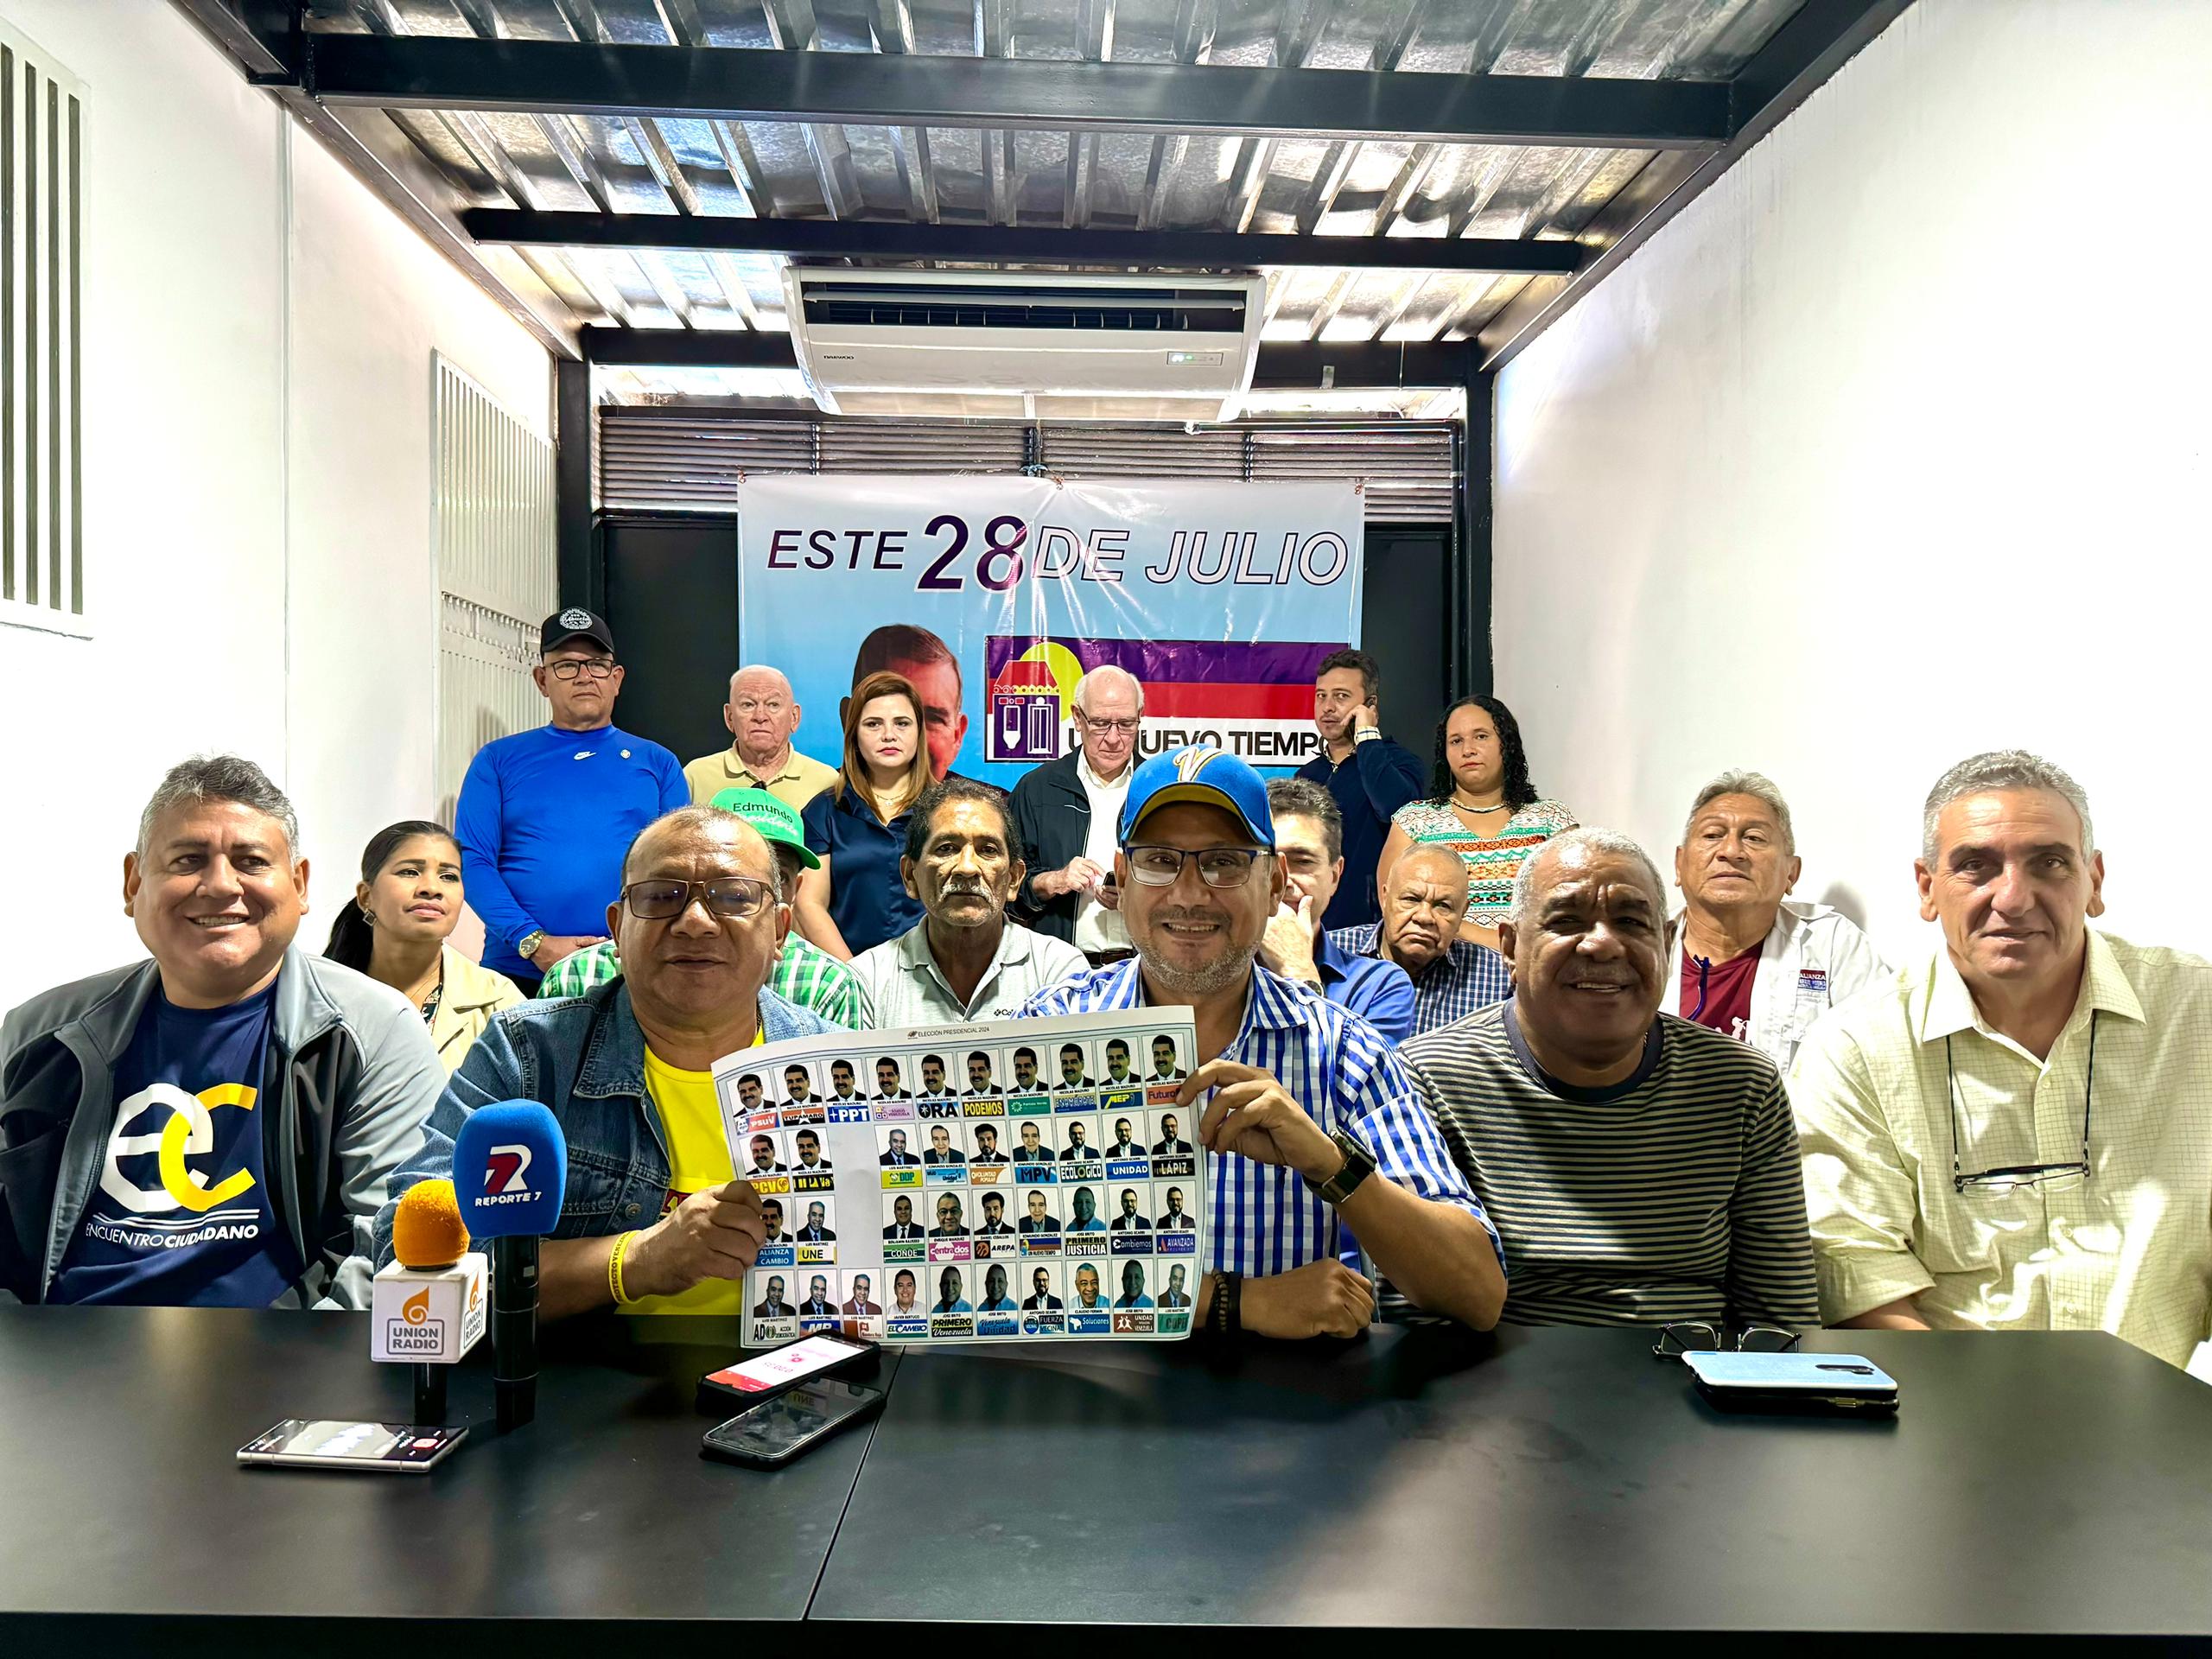 Comando con Venezuela en Carabobo activa jornadas “Aquí estamos” para incentivar participación el #28Jul